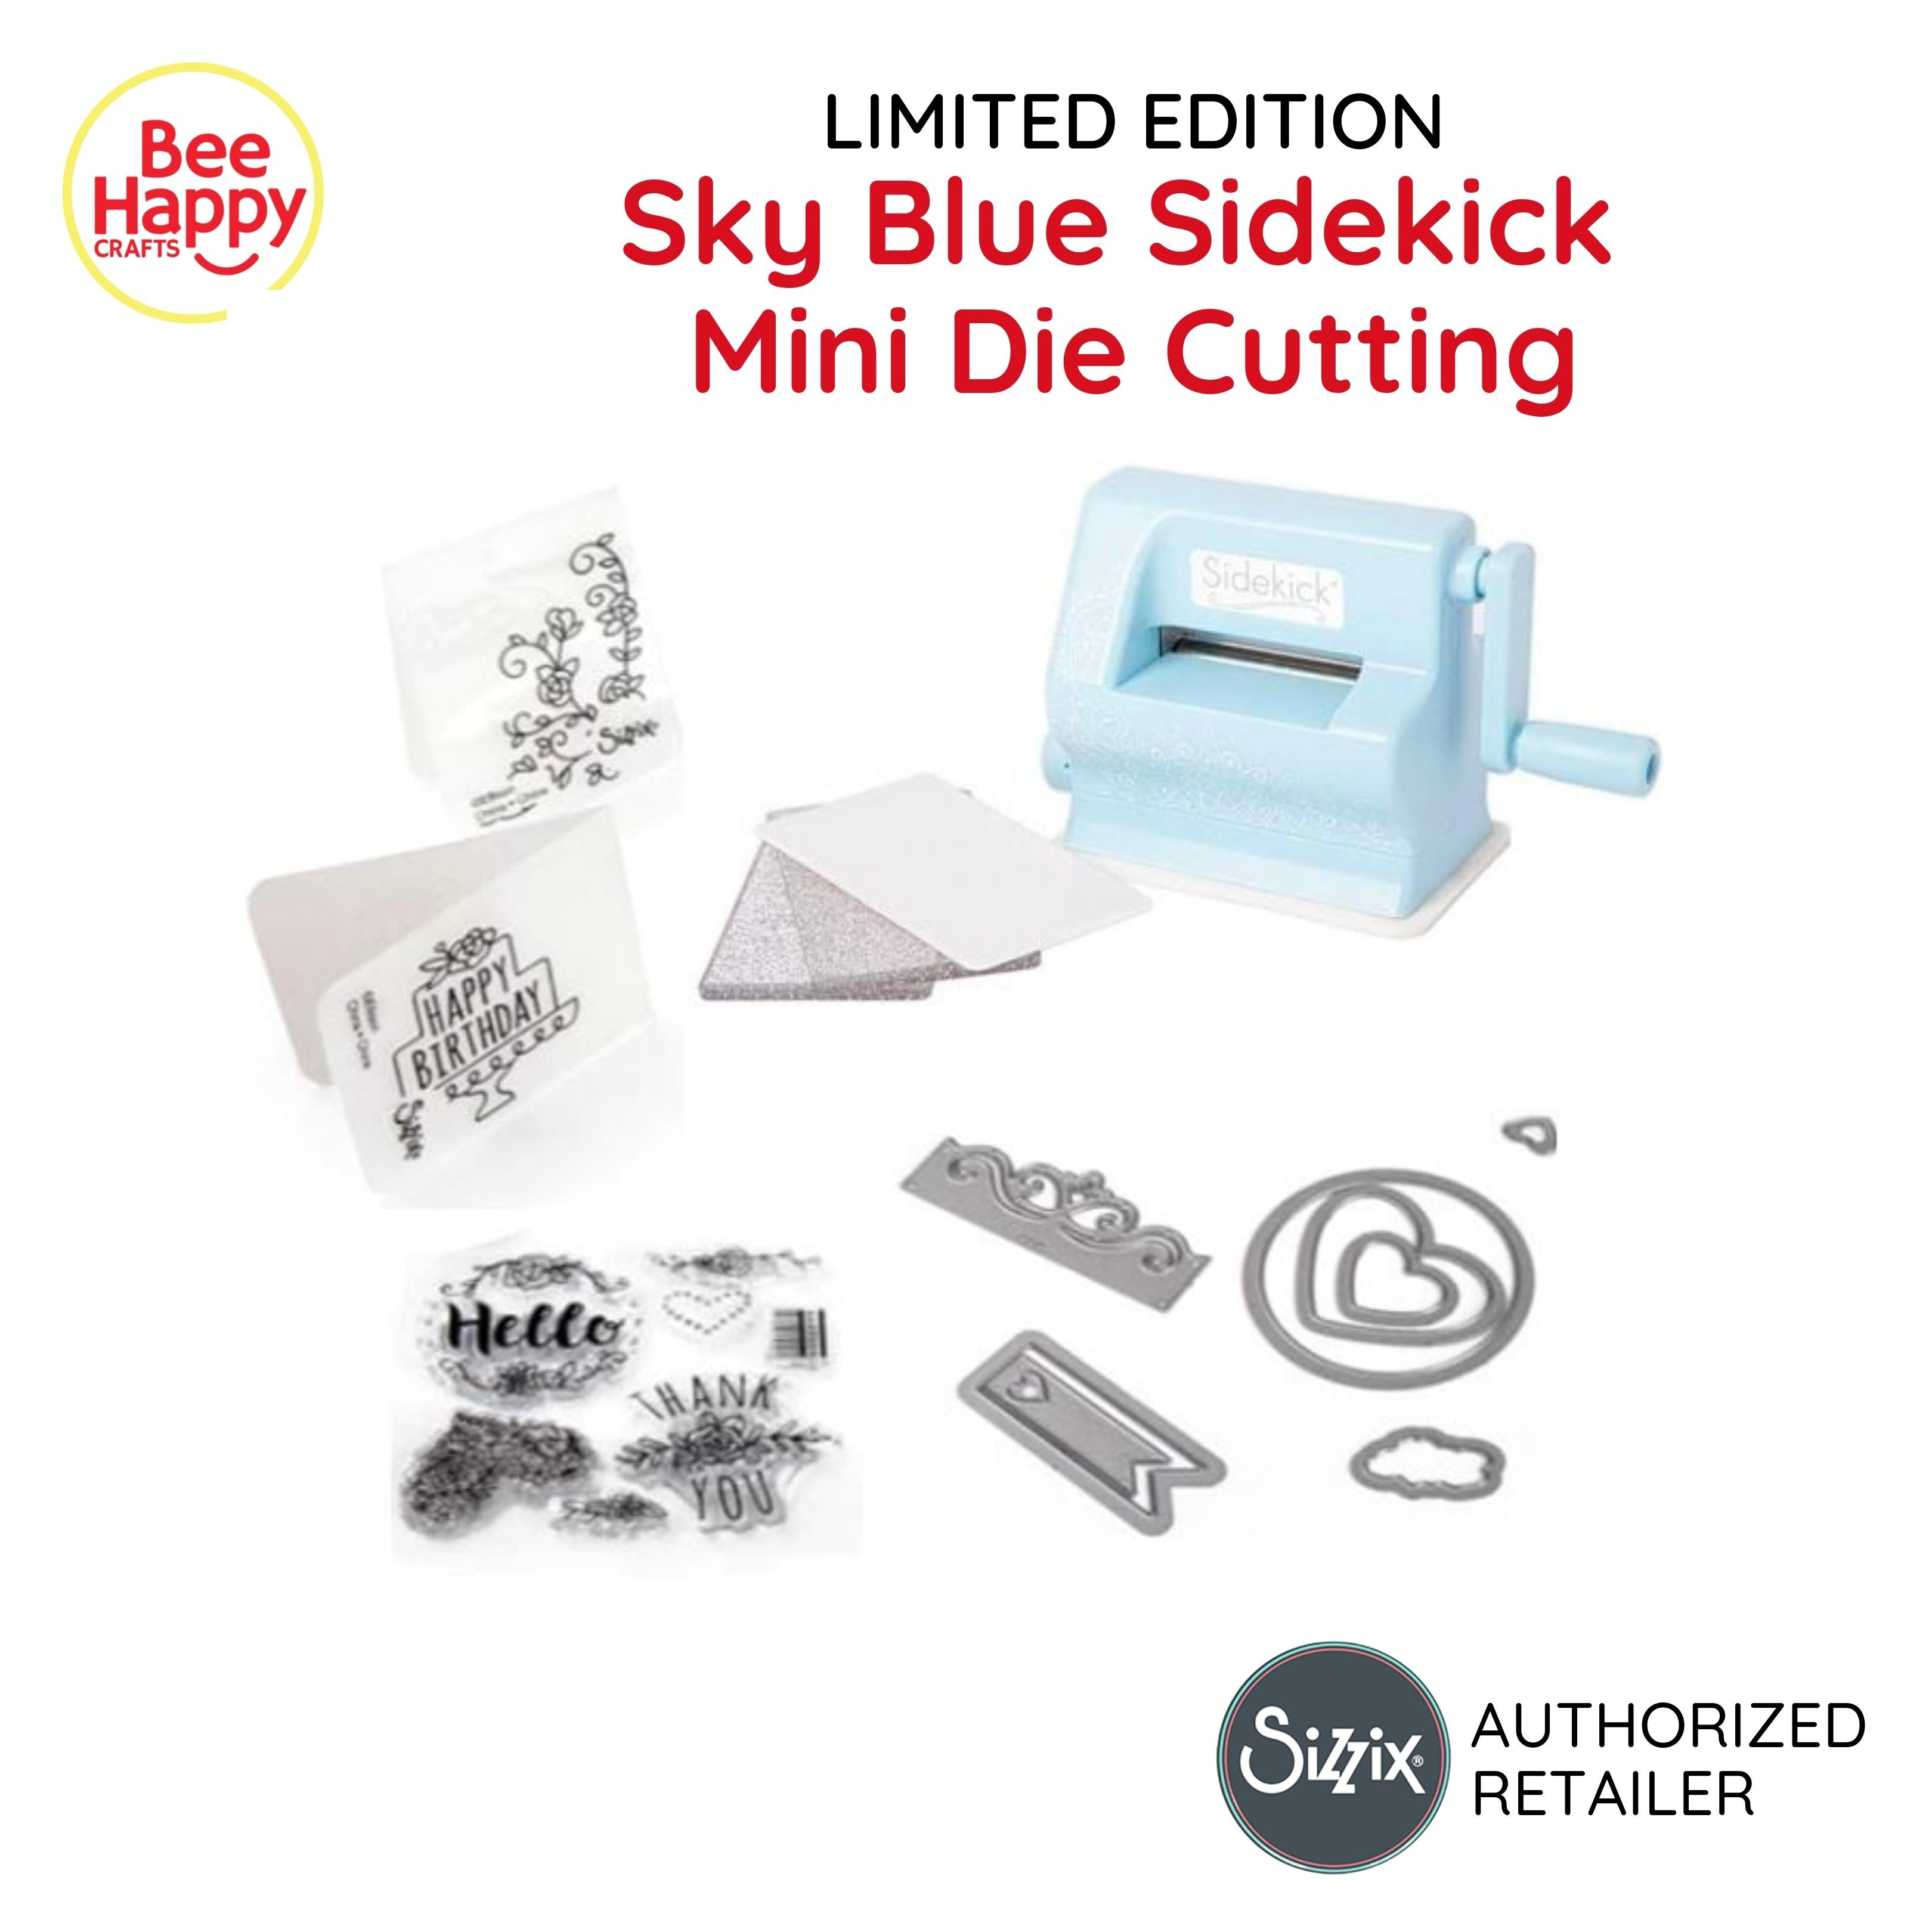 Sizzix Sidekick Starter Kit Limited Edition